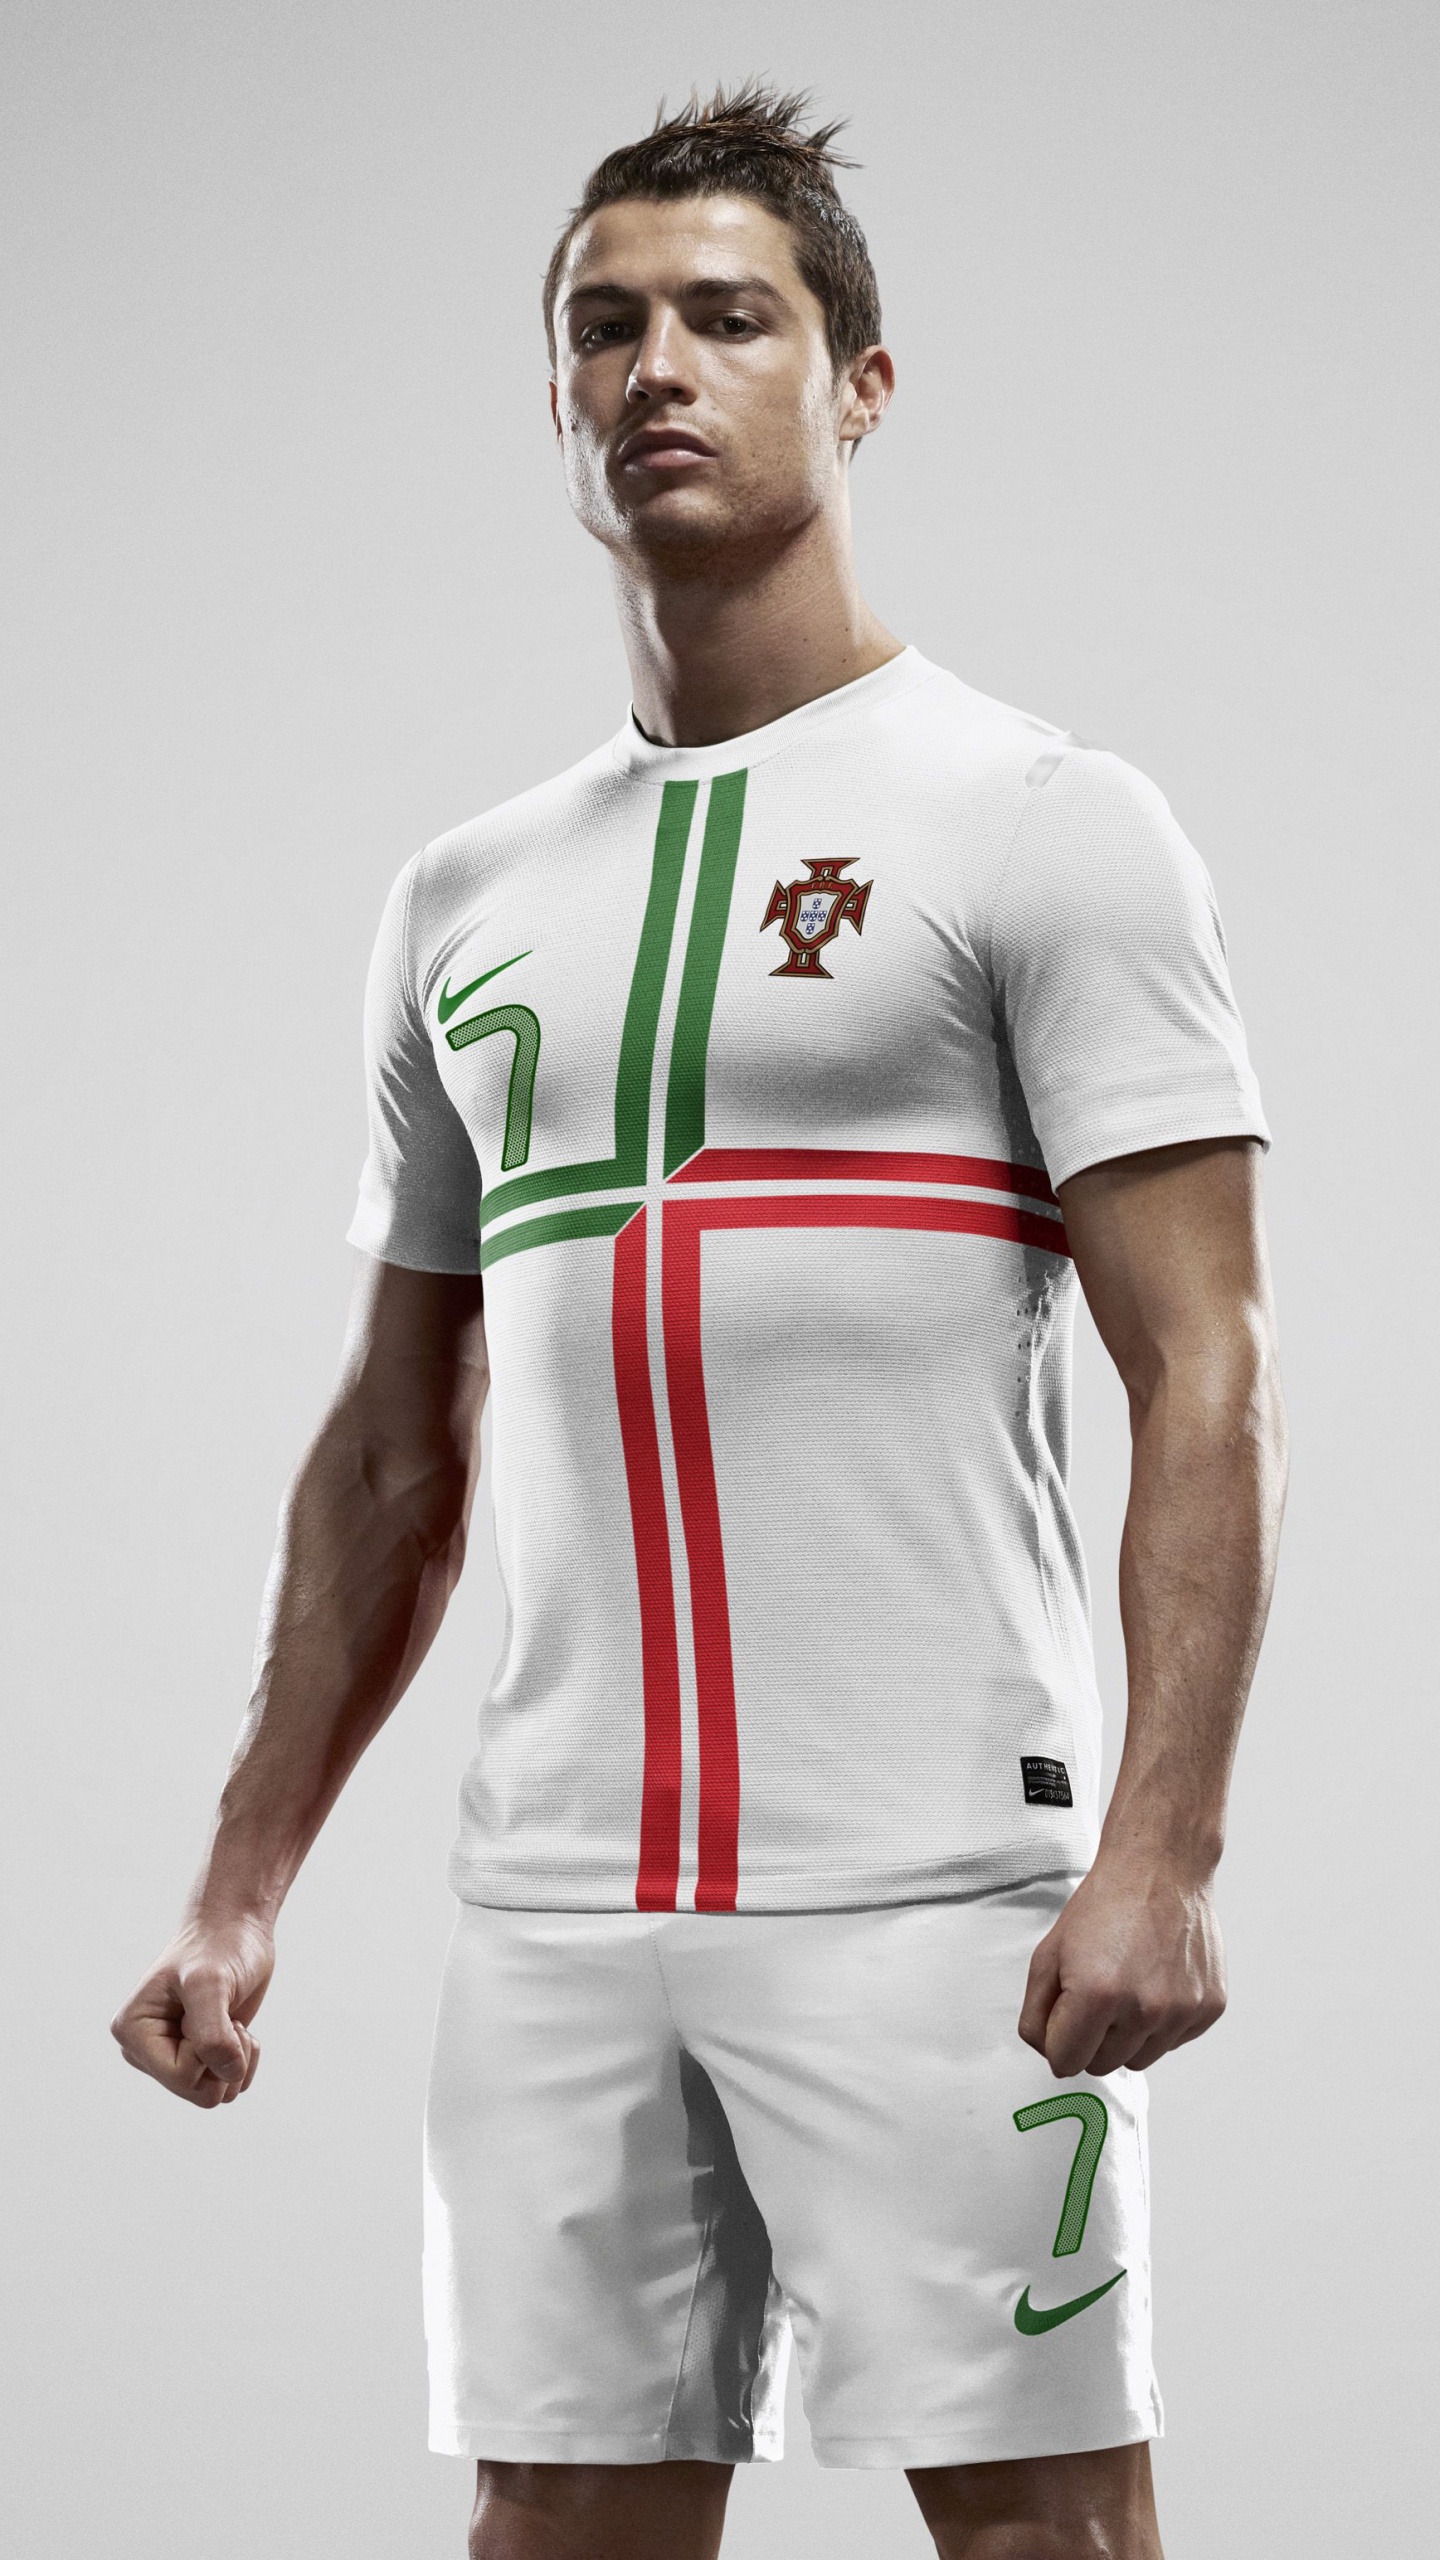 克里斯蒂亚诺*罗纳尔多, 足球运动员, 白色, 泽西, 运动服 壁纸 1440x2560 允许